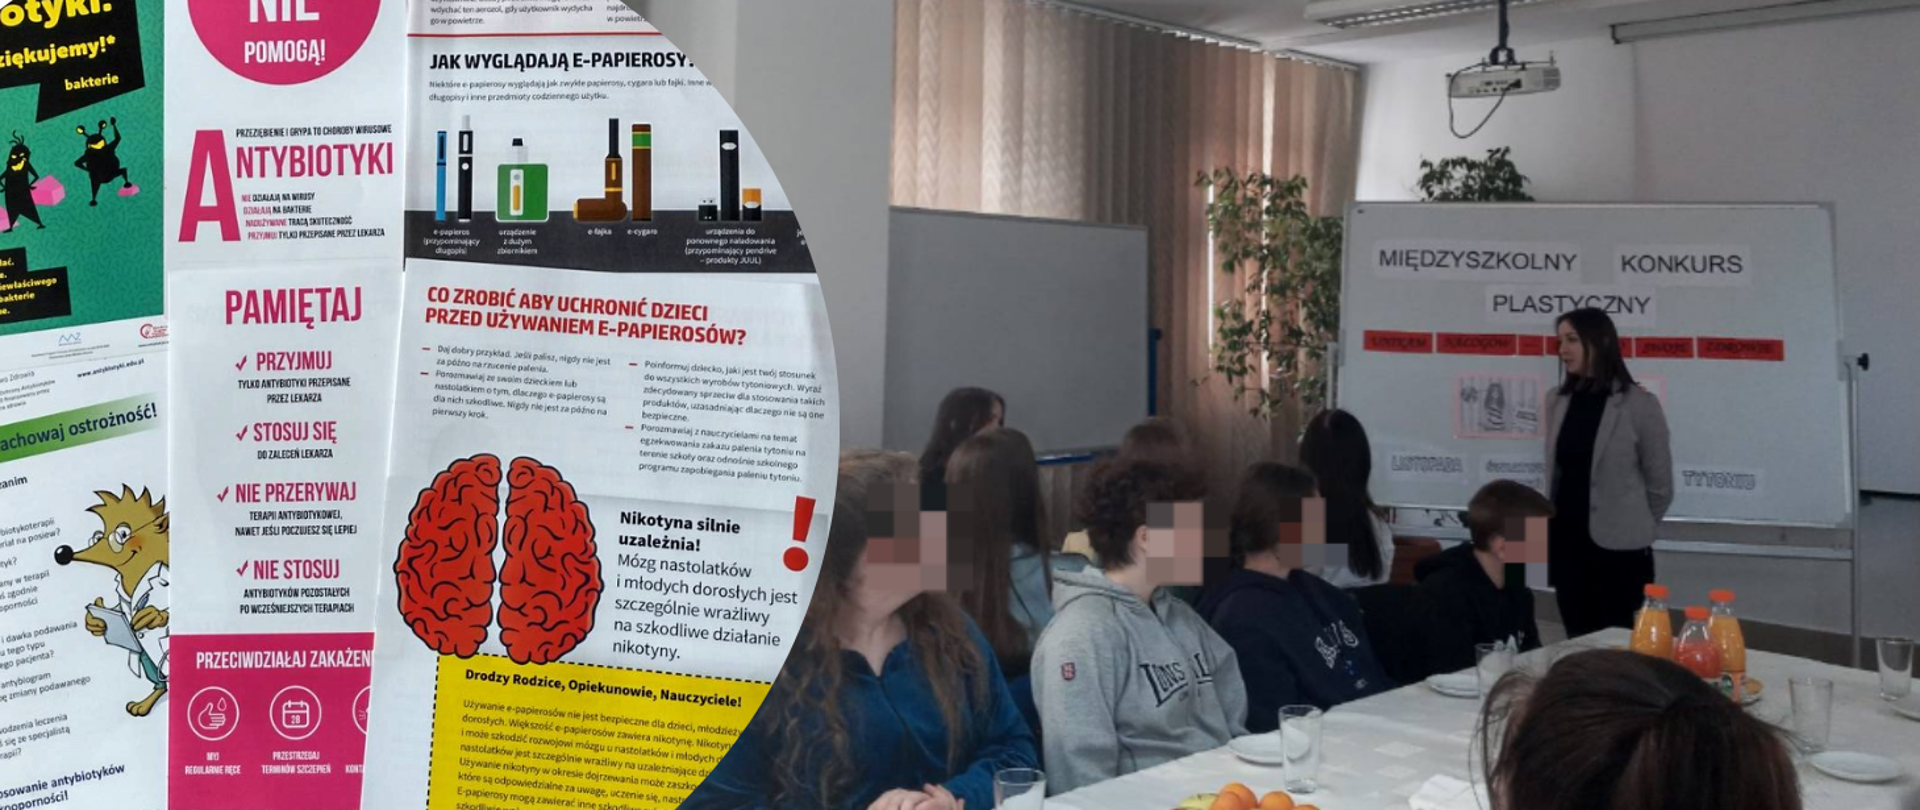 O antybiotykach i zapobieganiu uzależnieniom w Zespole Szkół w Jabłonowie Pomorskim